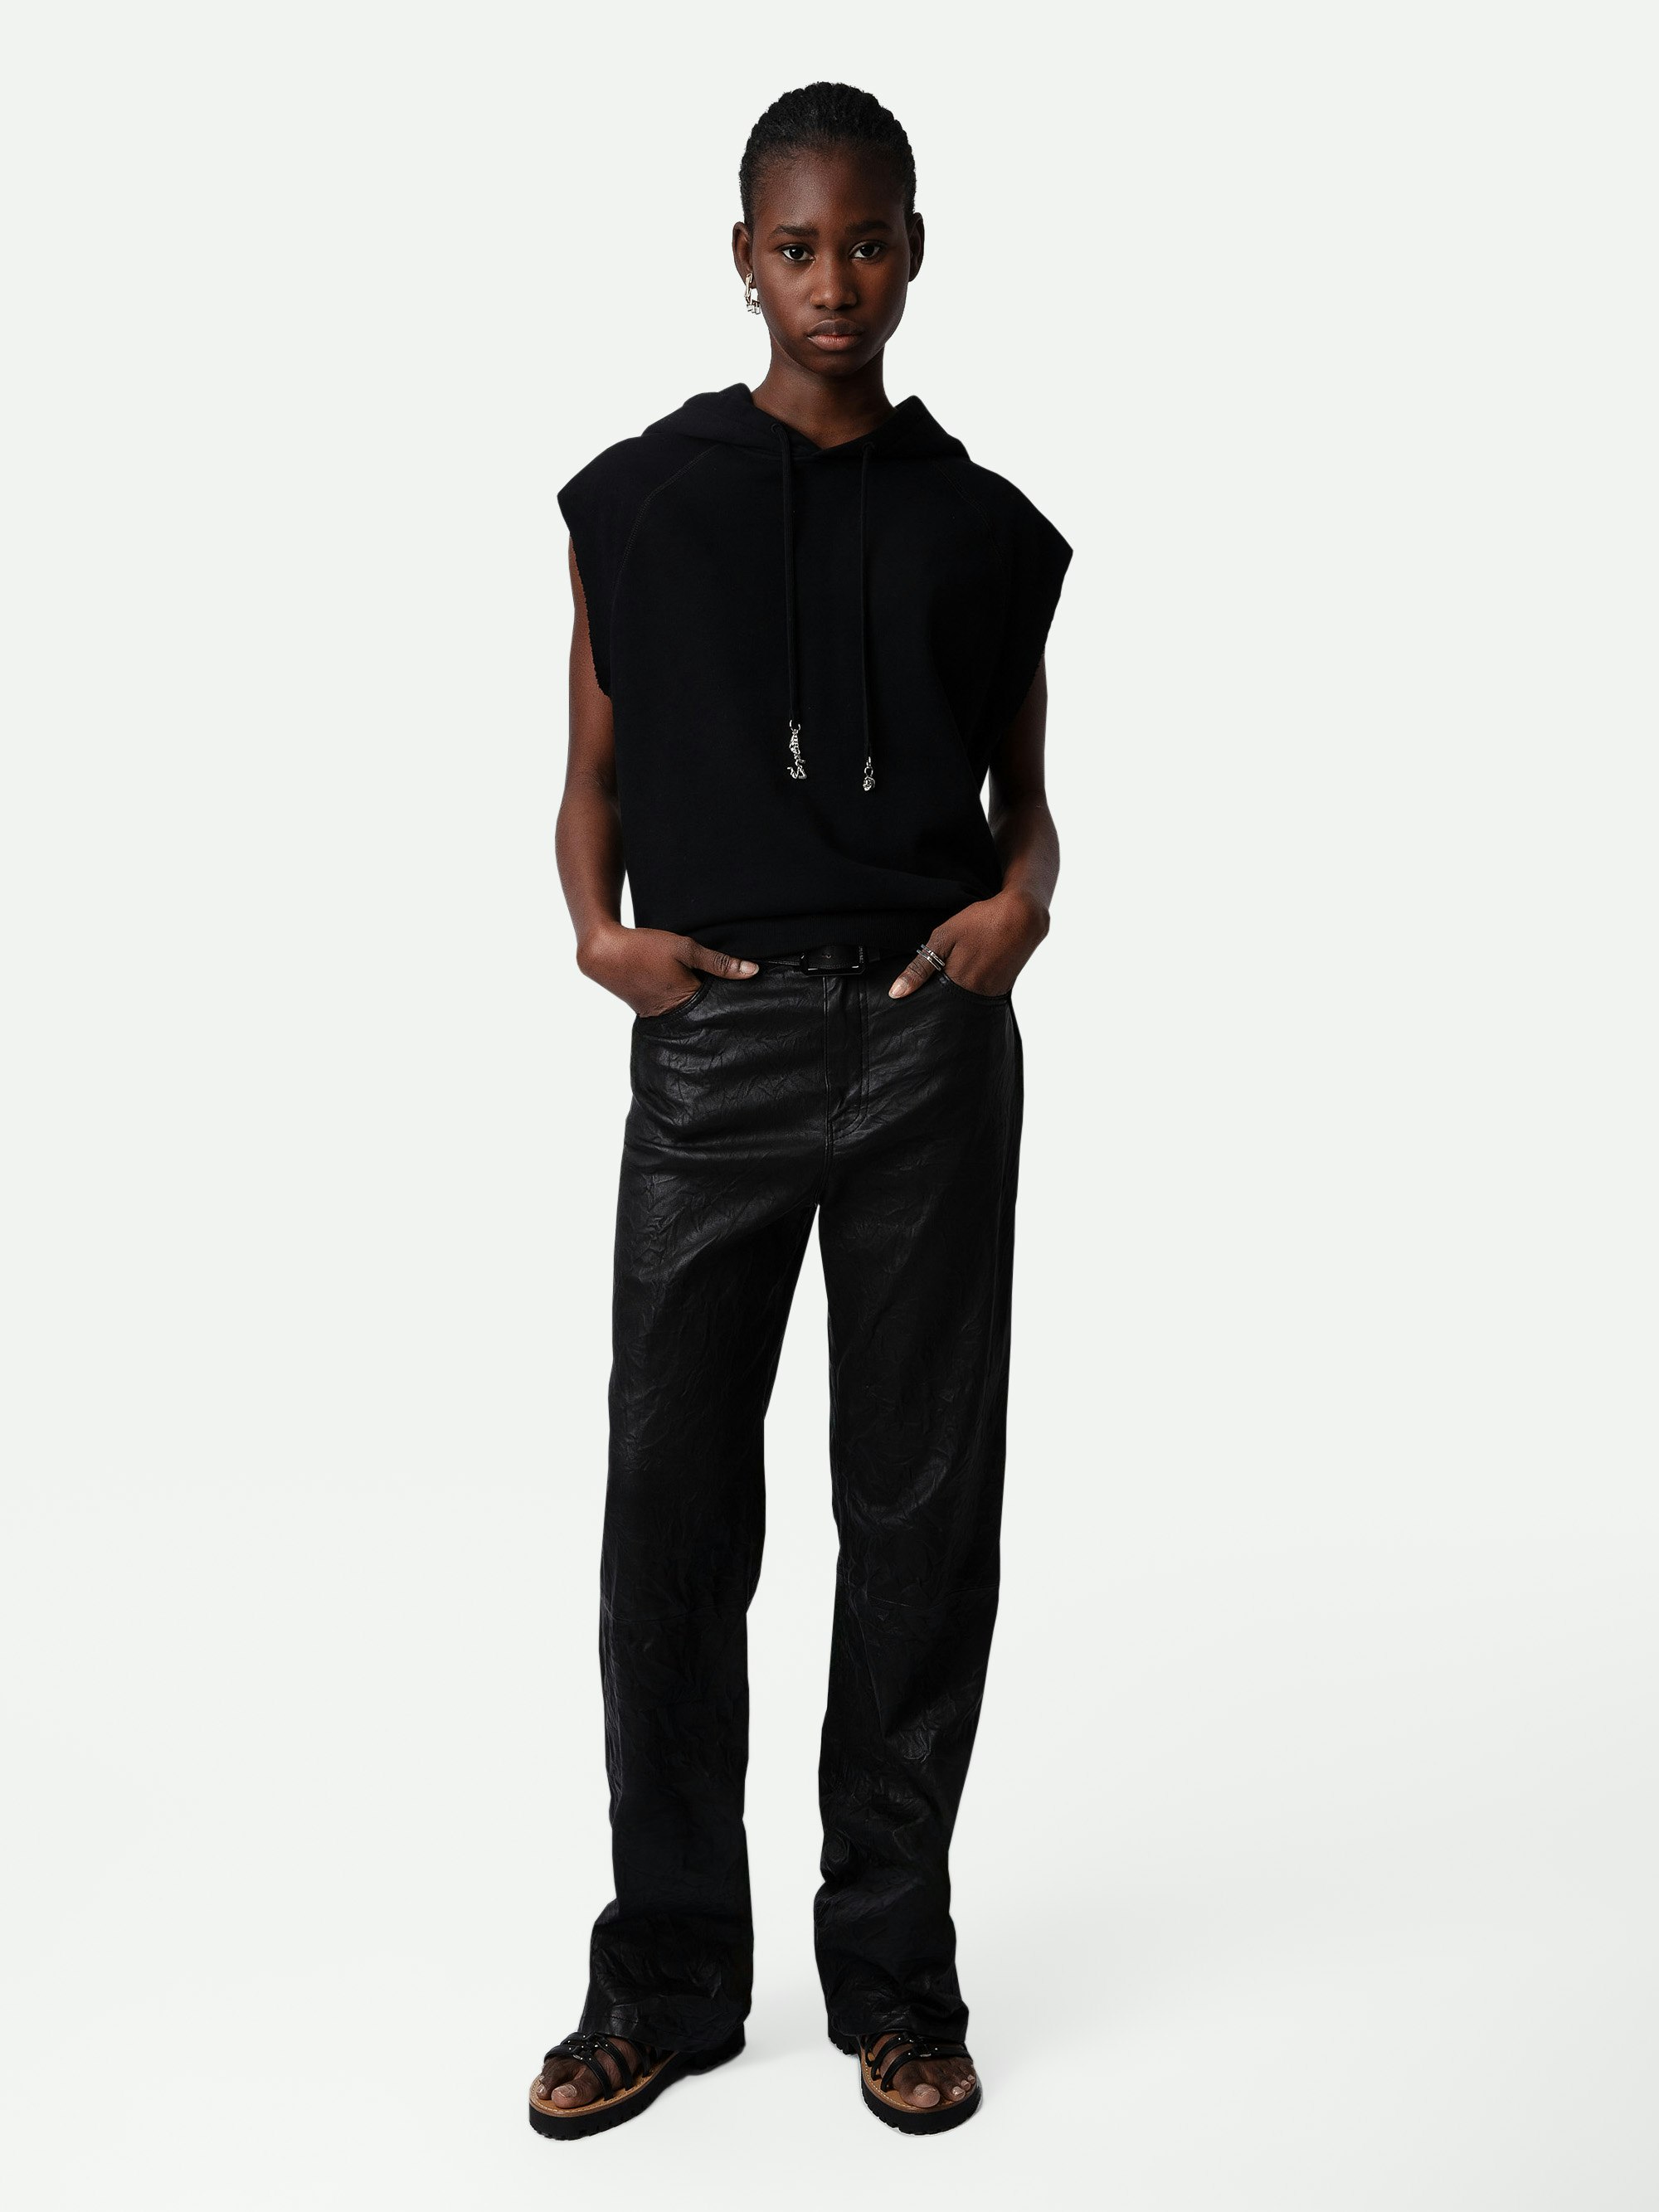 Sudadera Rupper - Sudadera negra de algodón, con capucha, sin mangas, con cintas de ajuste y colgantes.